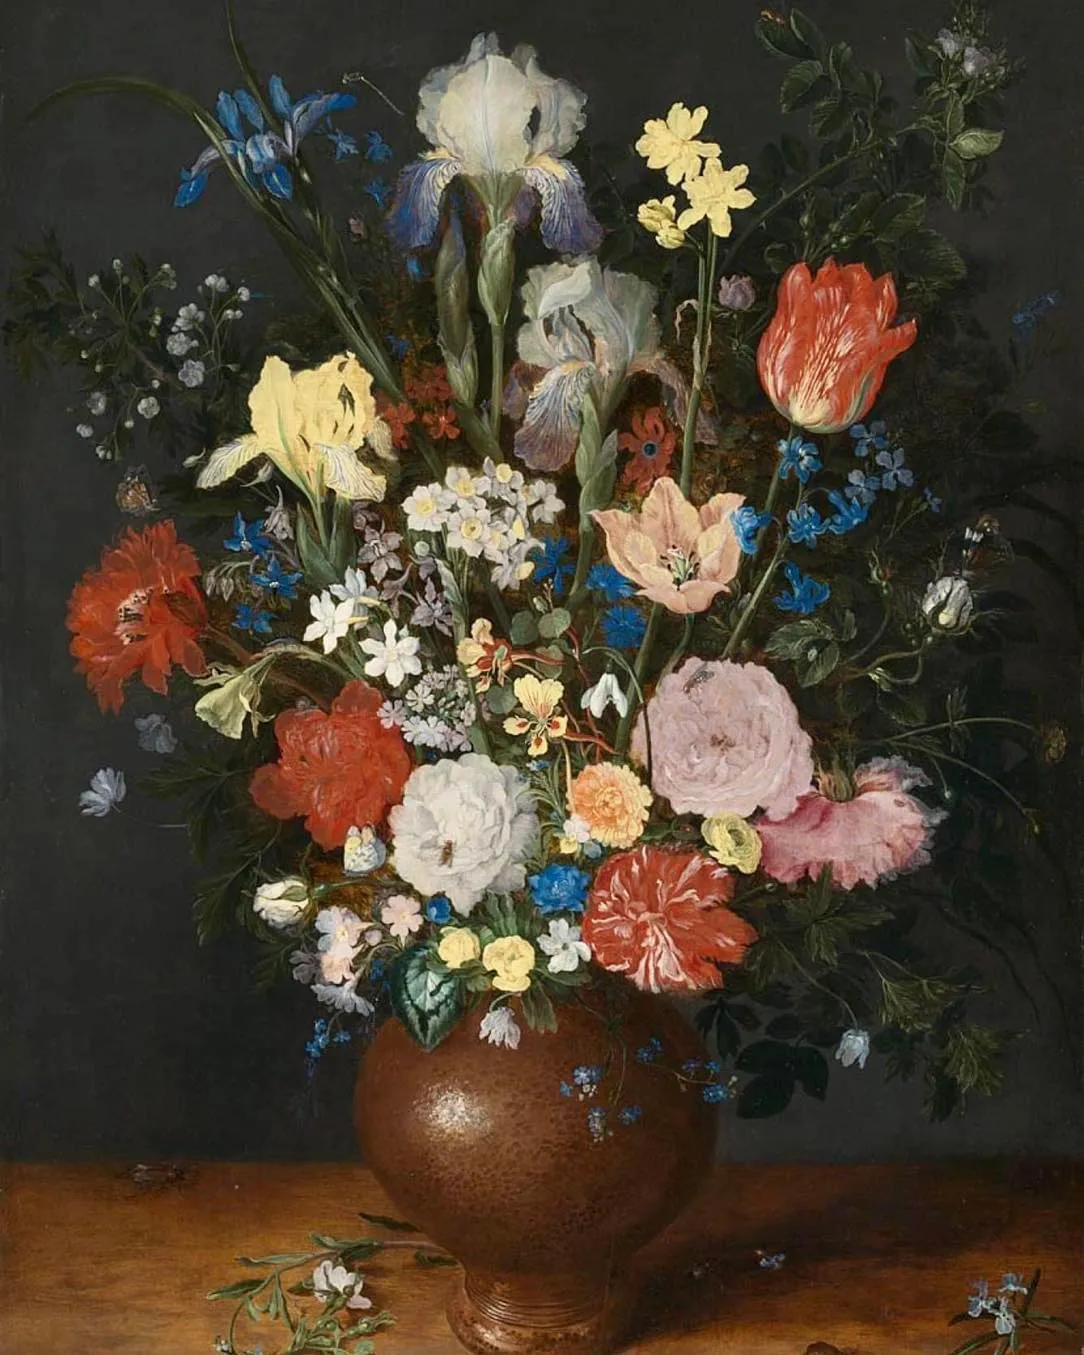 Velvet Dark and Blossom Bright: the Art of Flower Brueghel